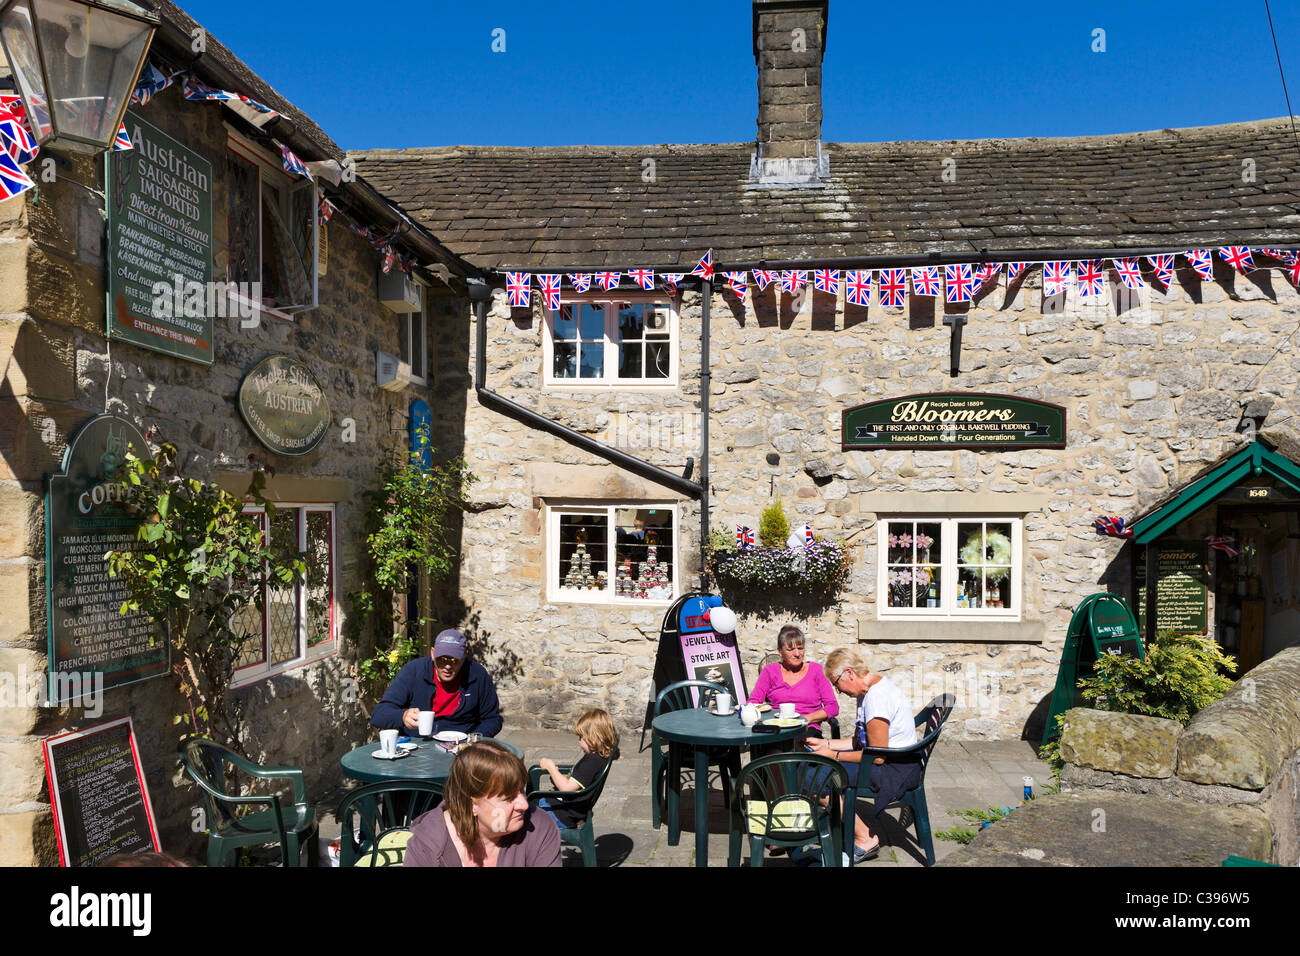 Cafe nel centro del villaggio durante il fine settimana del 2011 Royal Wedding, Bakewell, il Peak District, Derbyshire, Regno Unito Foto Stock